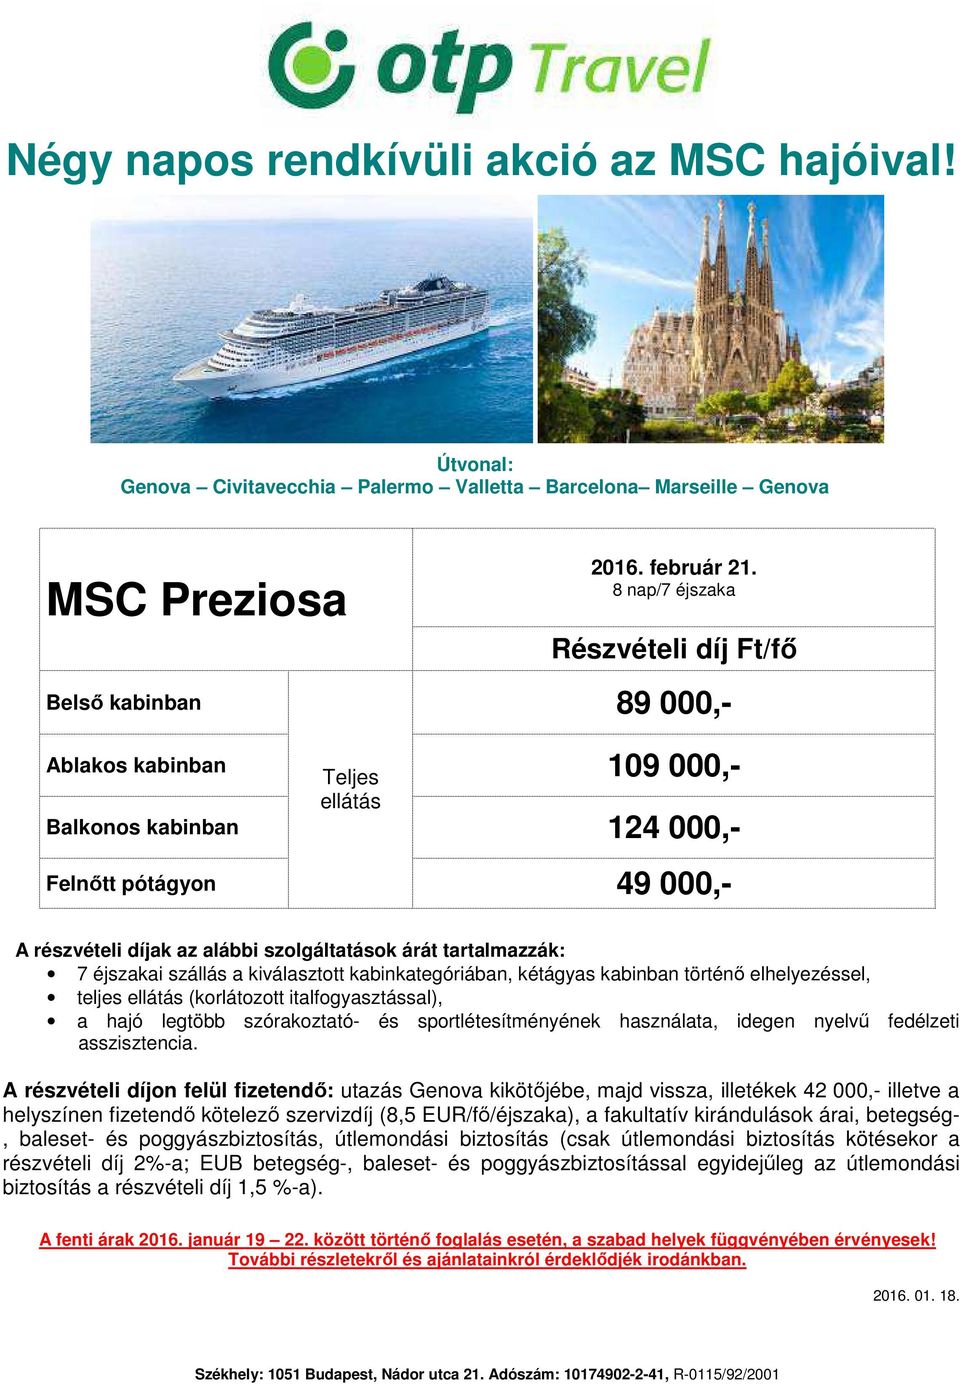 részvételi díjon felül fizetendő: utazás Genova kikötőjébe, majd vissza, illetékek 42 000,- illetve a helyszínen fizetendő kötelező szervizdíj (8,5 EUR/fő/éjszaka), a fakultatív